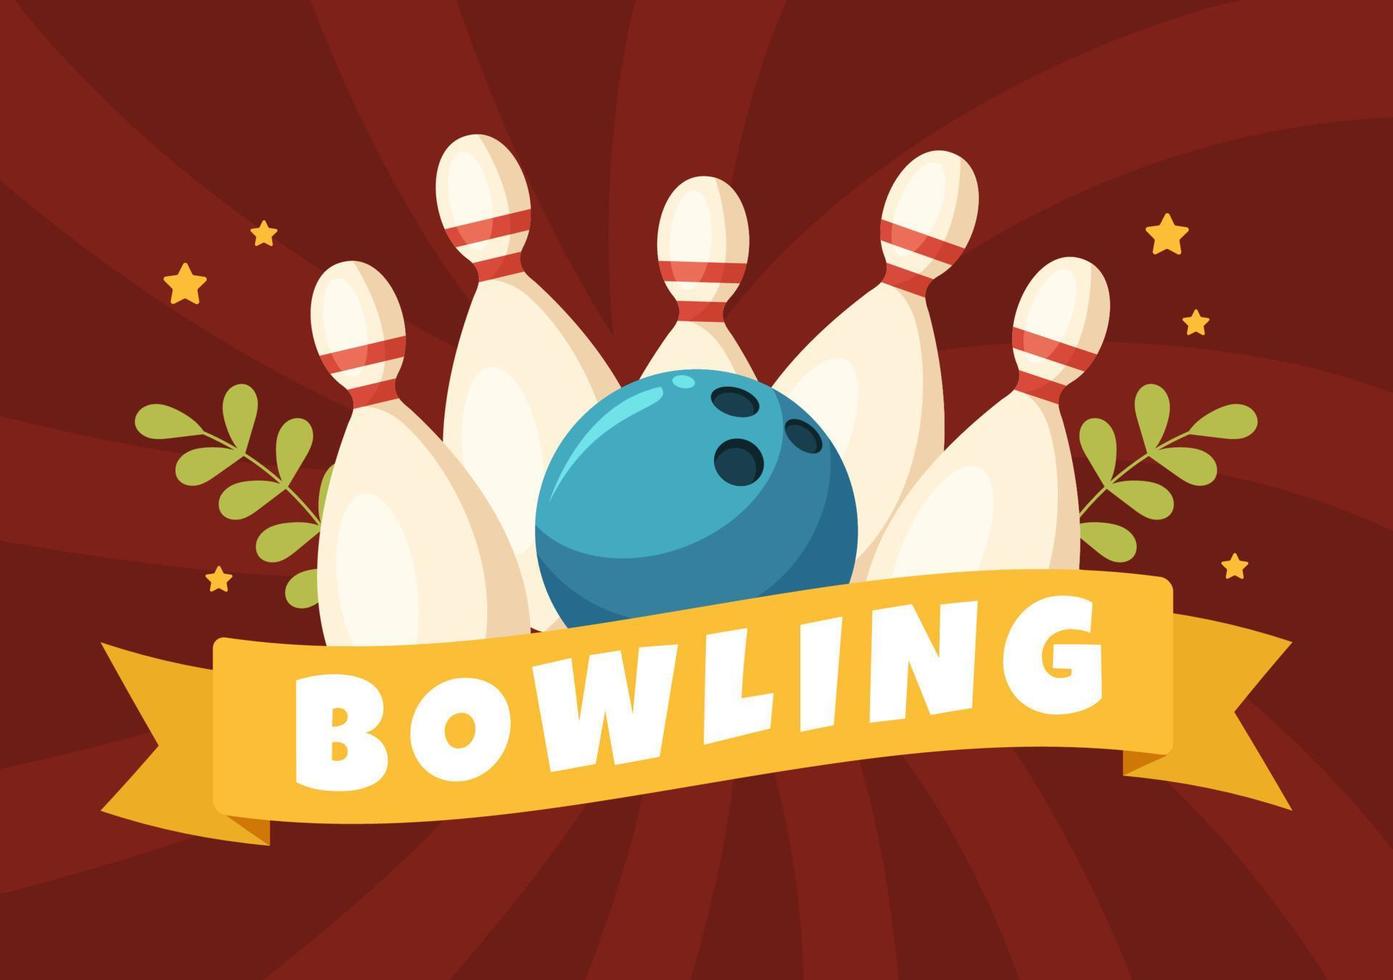 bowling spel hand getekende cartoon platte achtergrond ontwerp illustratie met pinnen, ballen en scoreborden in een sportclub of activiteit competitie vector